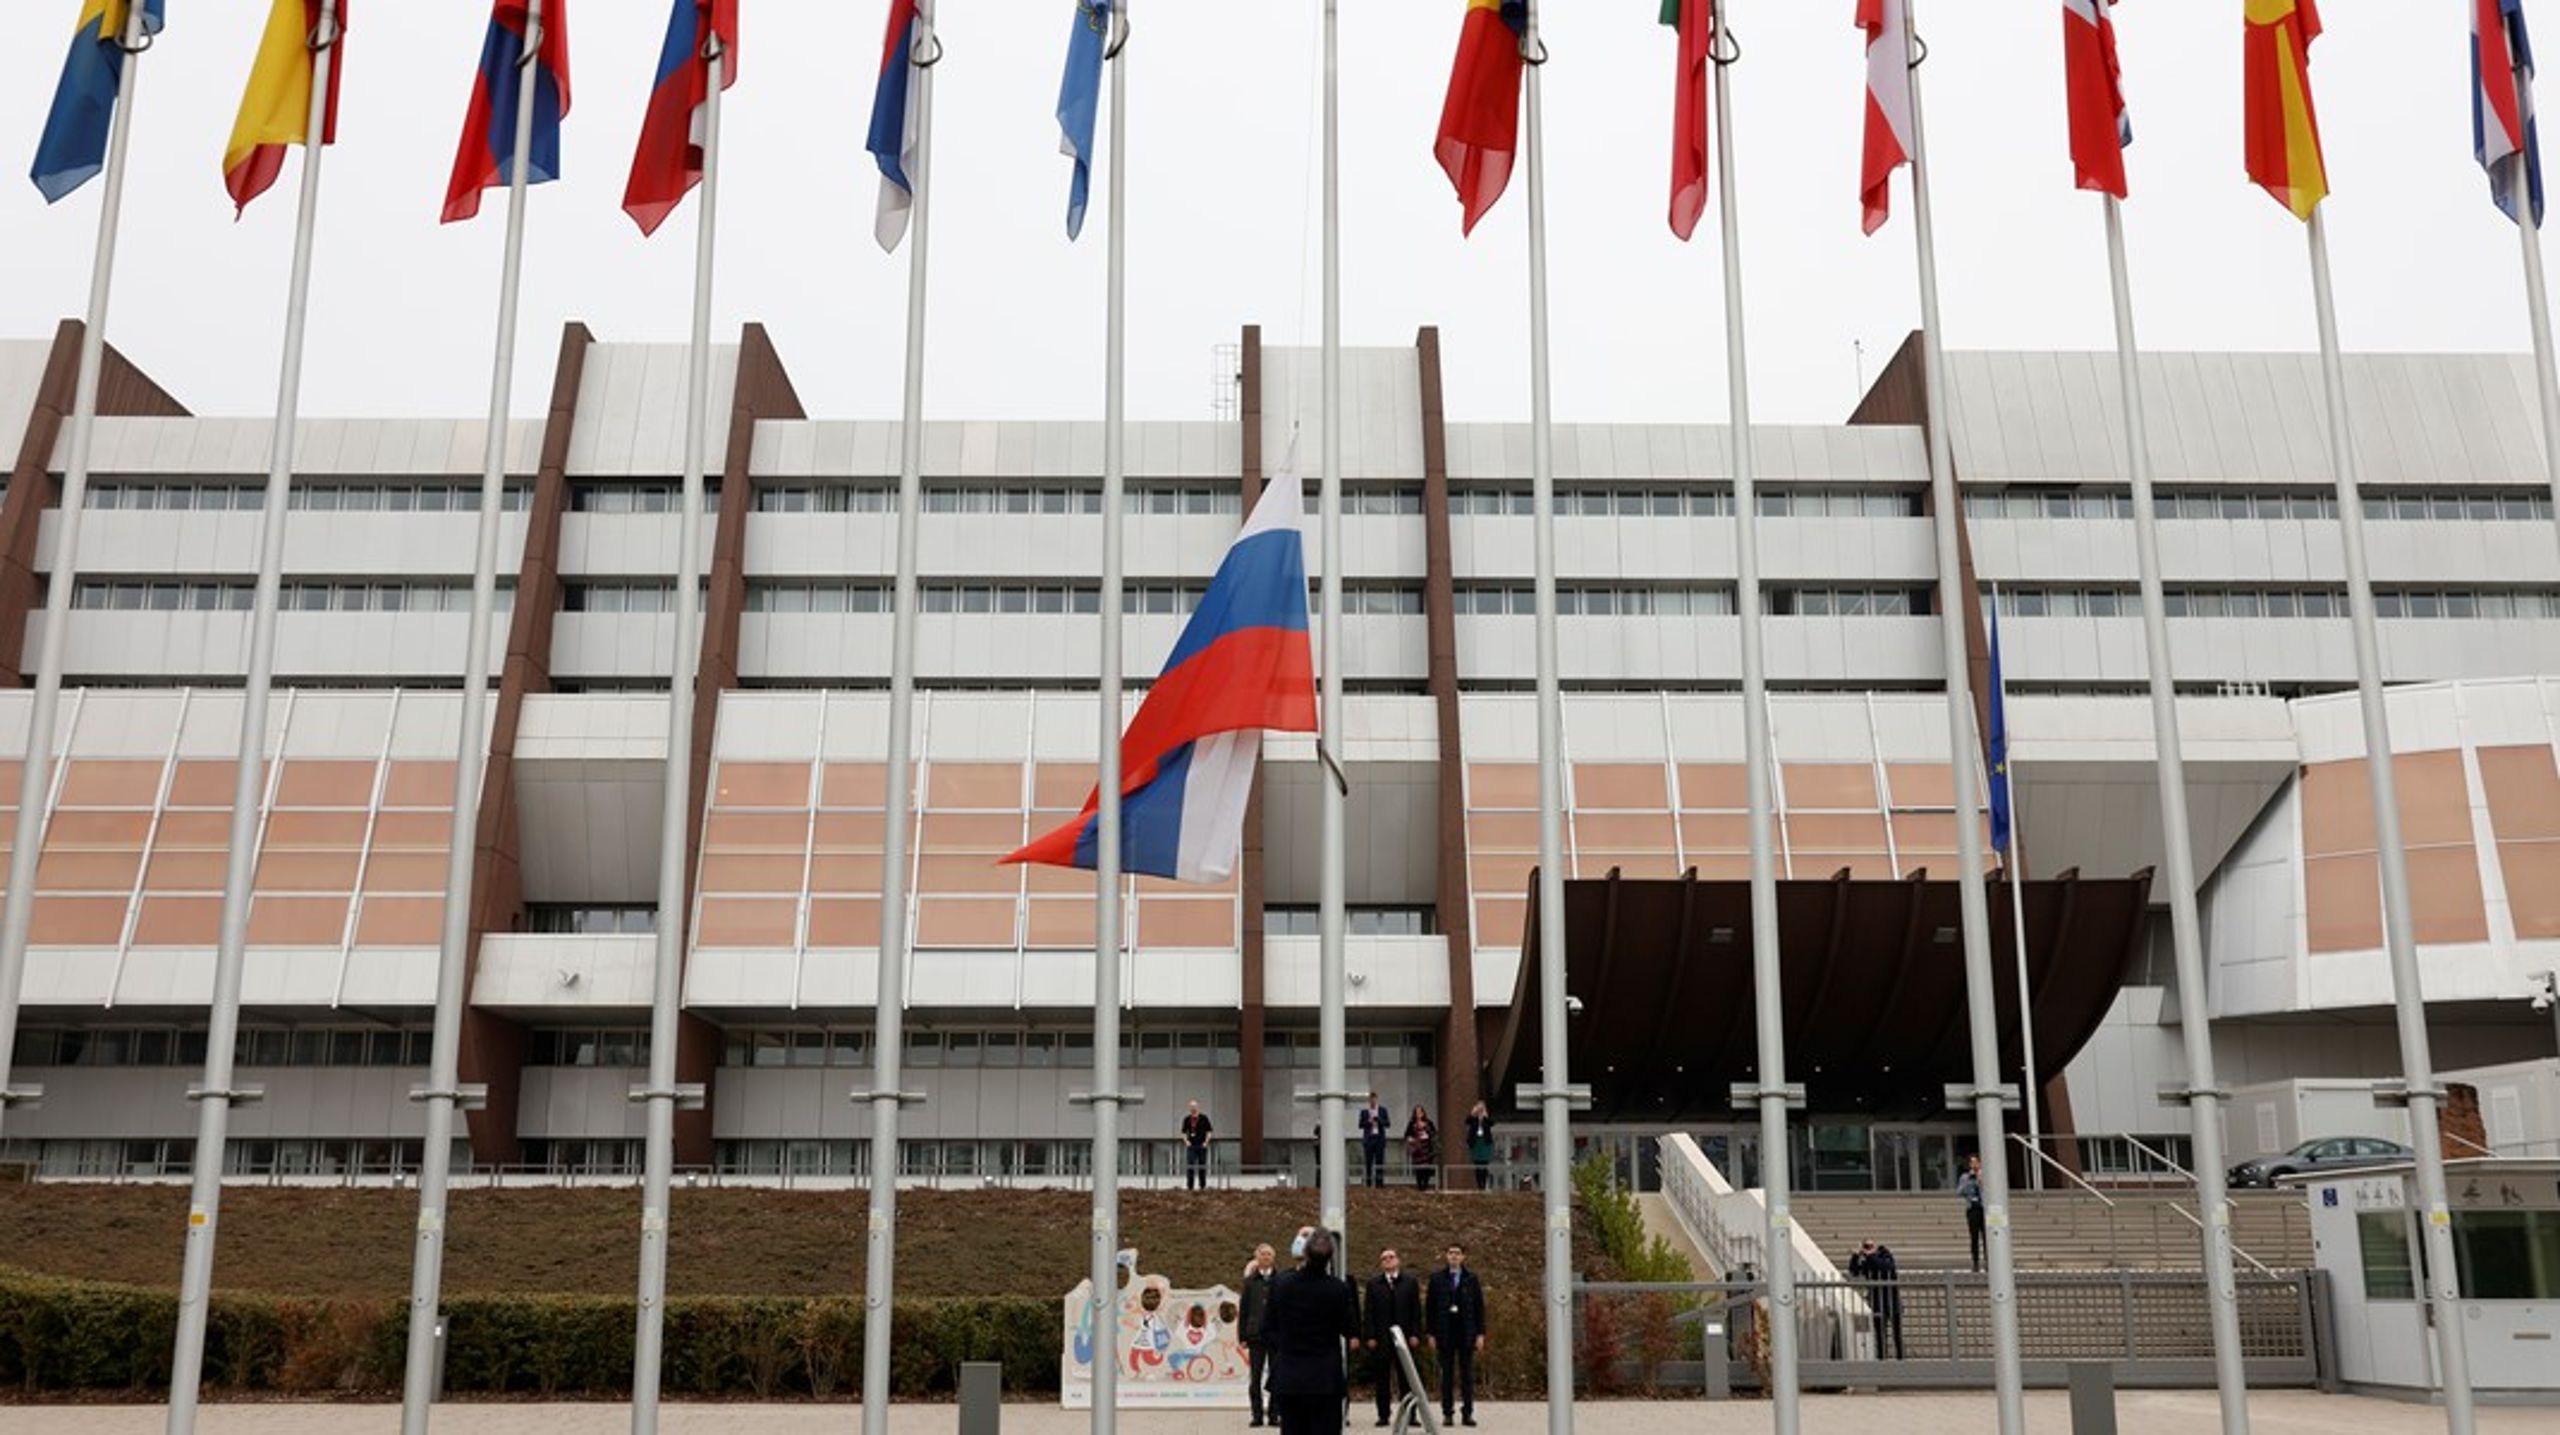 Den ryska flaggan plockas ned utanför Europarådets byggnad i&nbsp;Strasbourg.